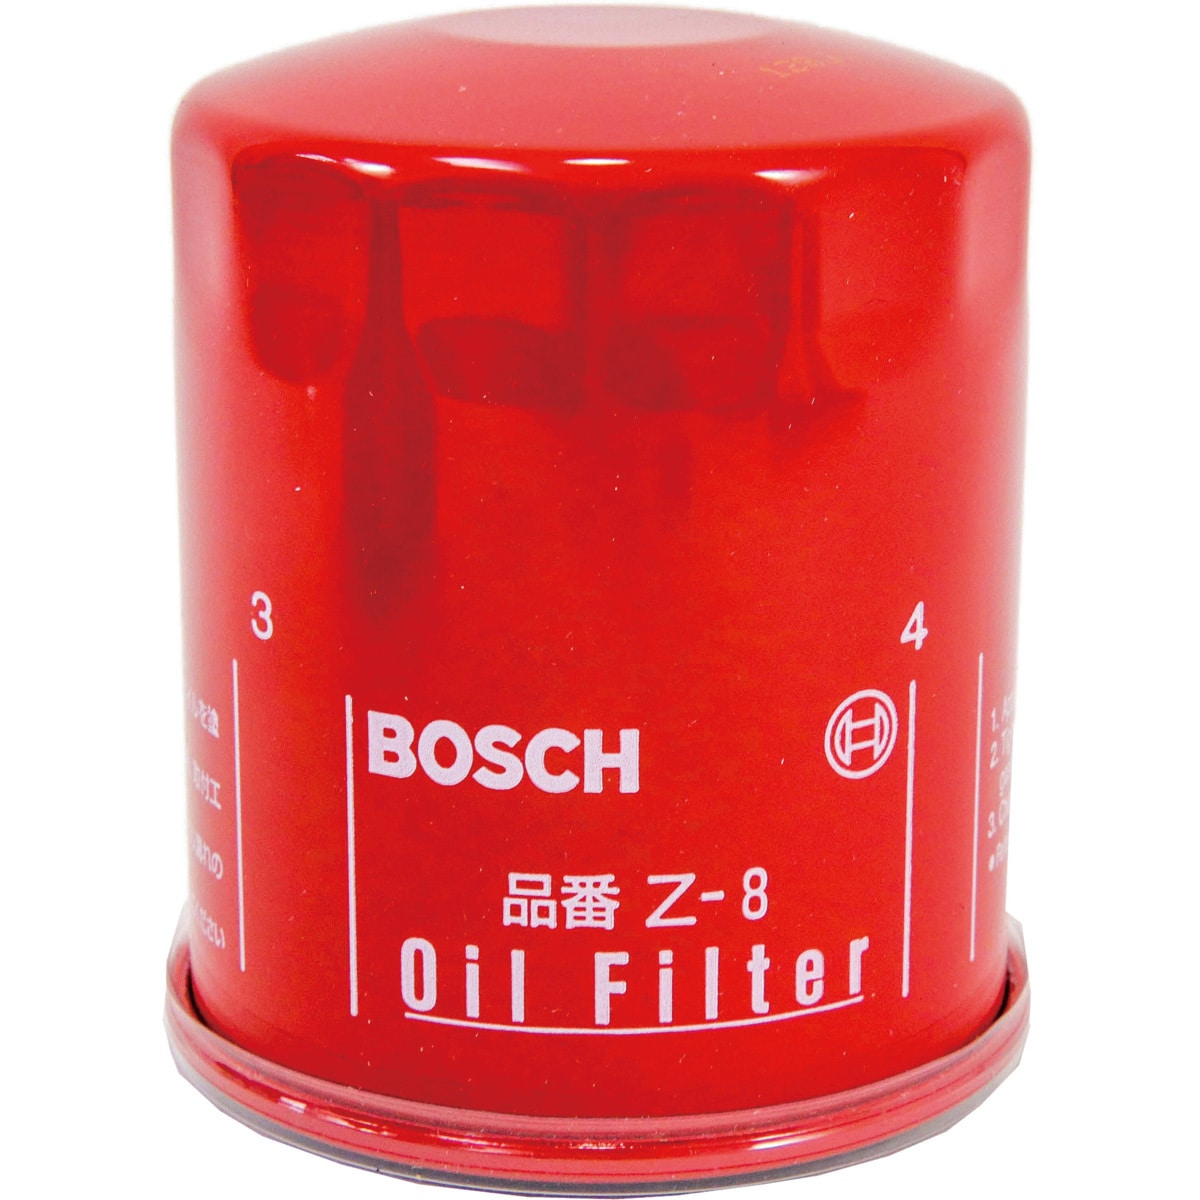 新品オイルフィルター スズキ ボッシュ(BOSCH) S-3 １０個